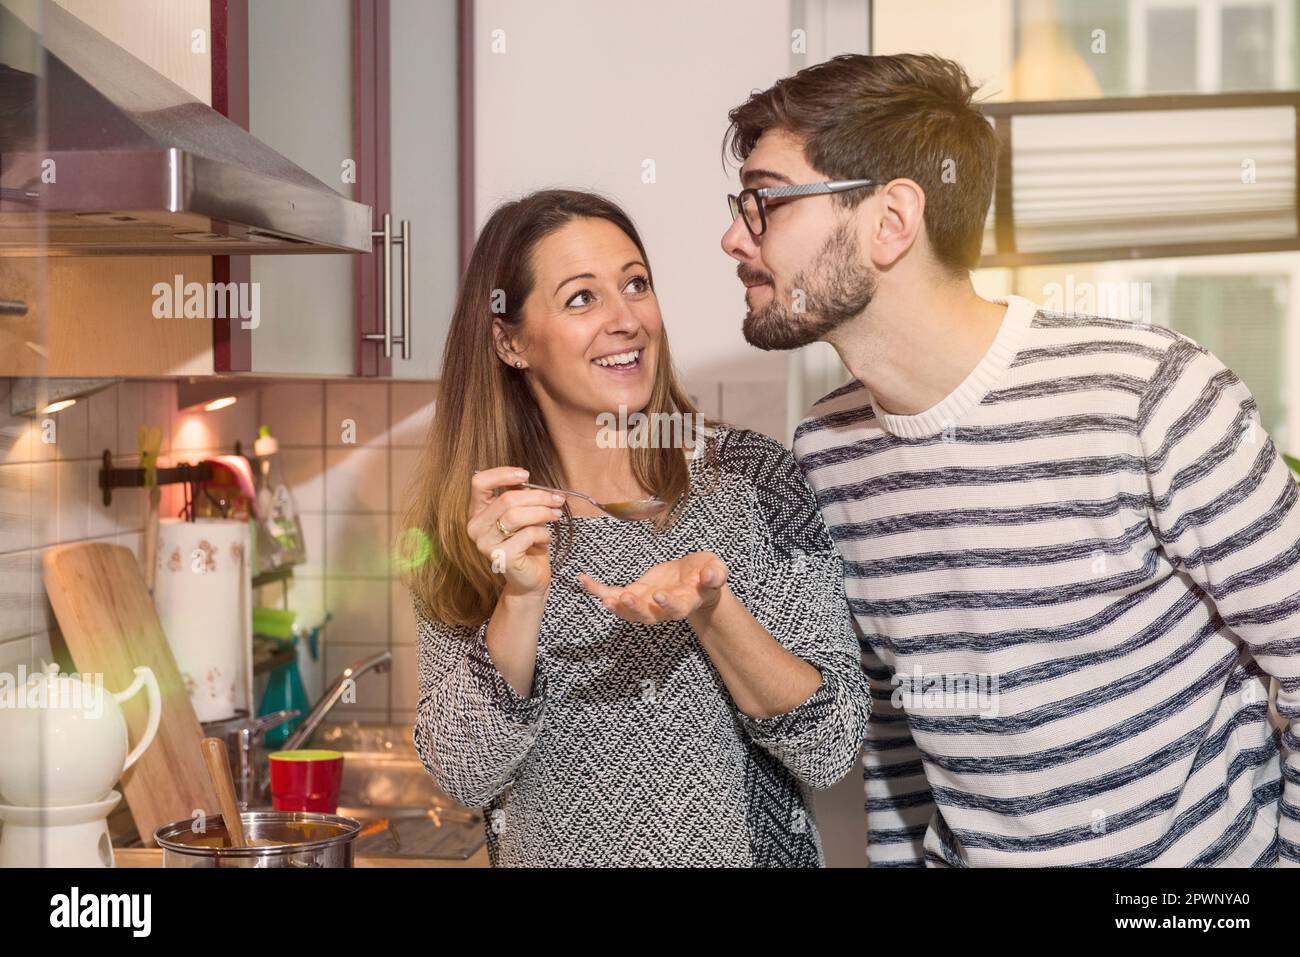 La femme goûte la soupe dans la cuisine pendant que son mari regarde, Munich, Allemagne Banque D'Images